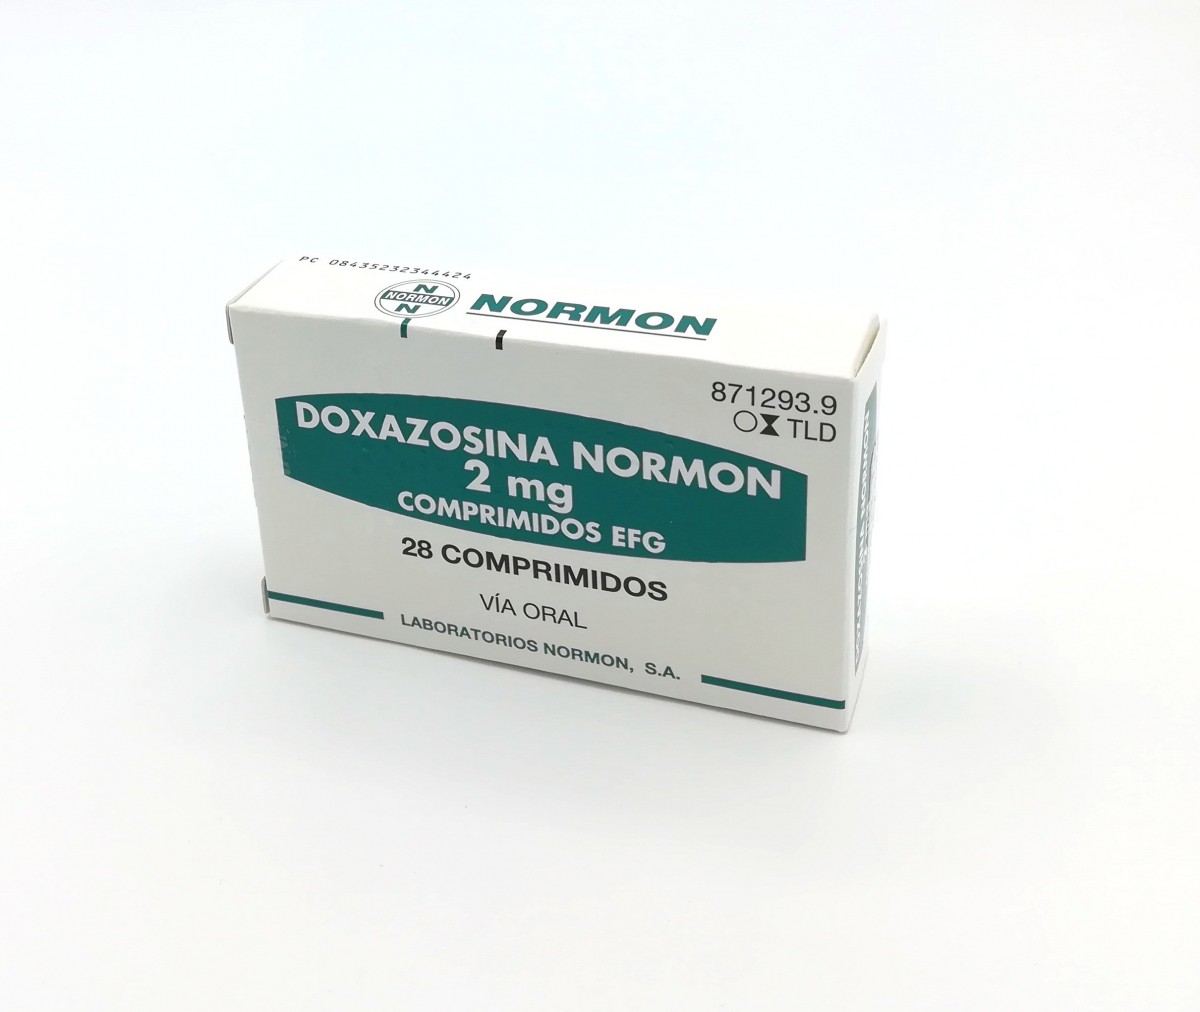 DOXAZOSINA NORMON 2 mg COMPRIMIDOS EFG , 500 comprimidos fotografía del envase.